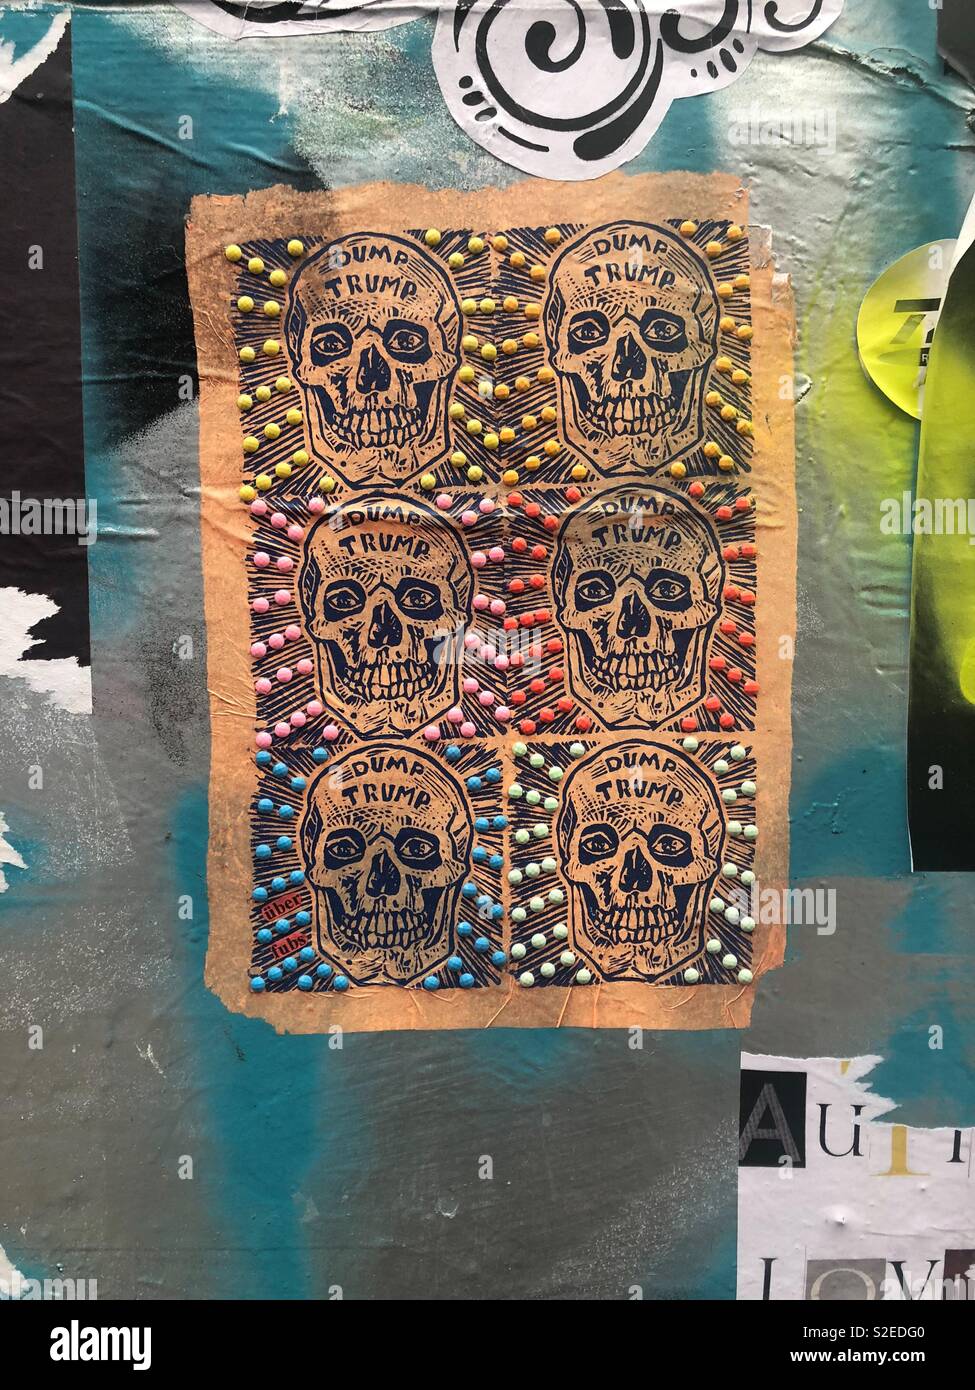 Dump Trump Schädel Kunst mit bunten Tupfen Dekoration auf braunem Papier als Teil der Collage street art in Shoreditch, London, England Stockfoto